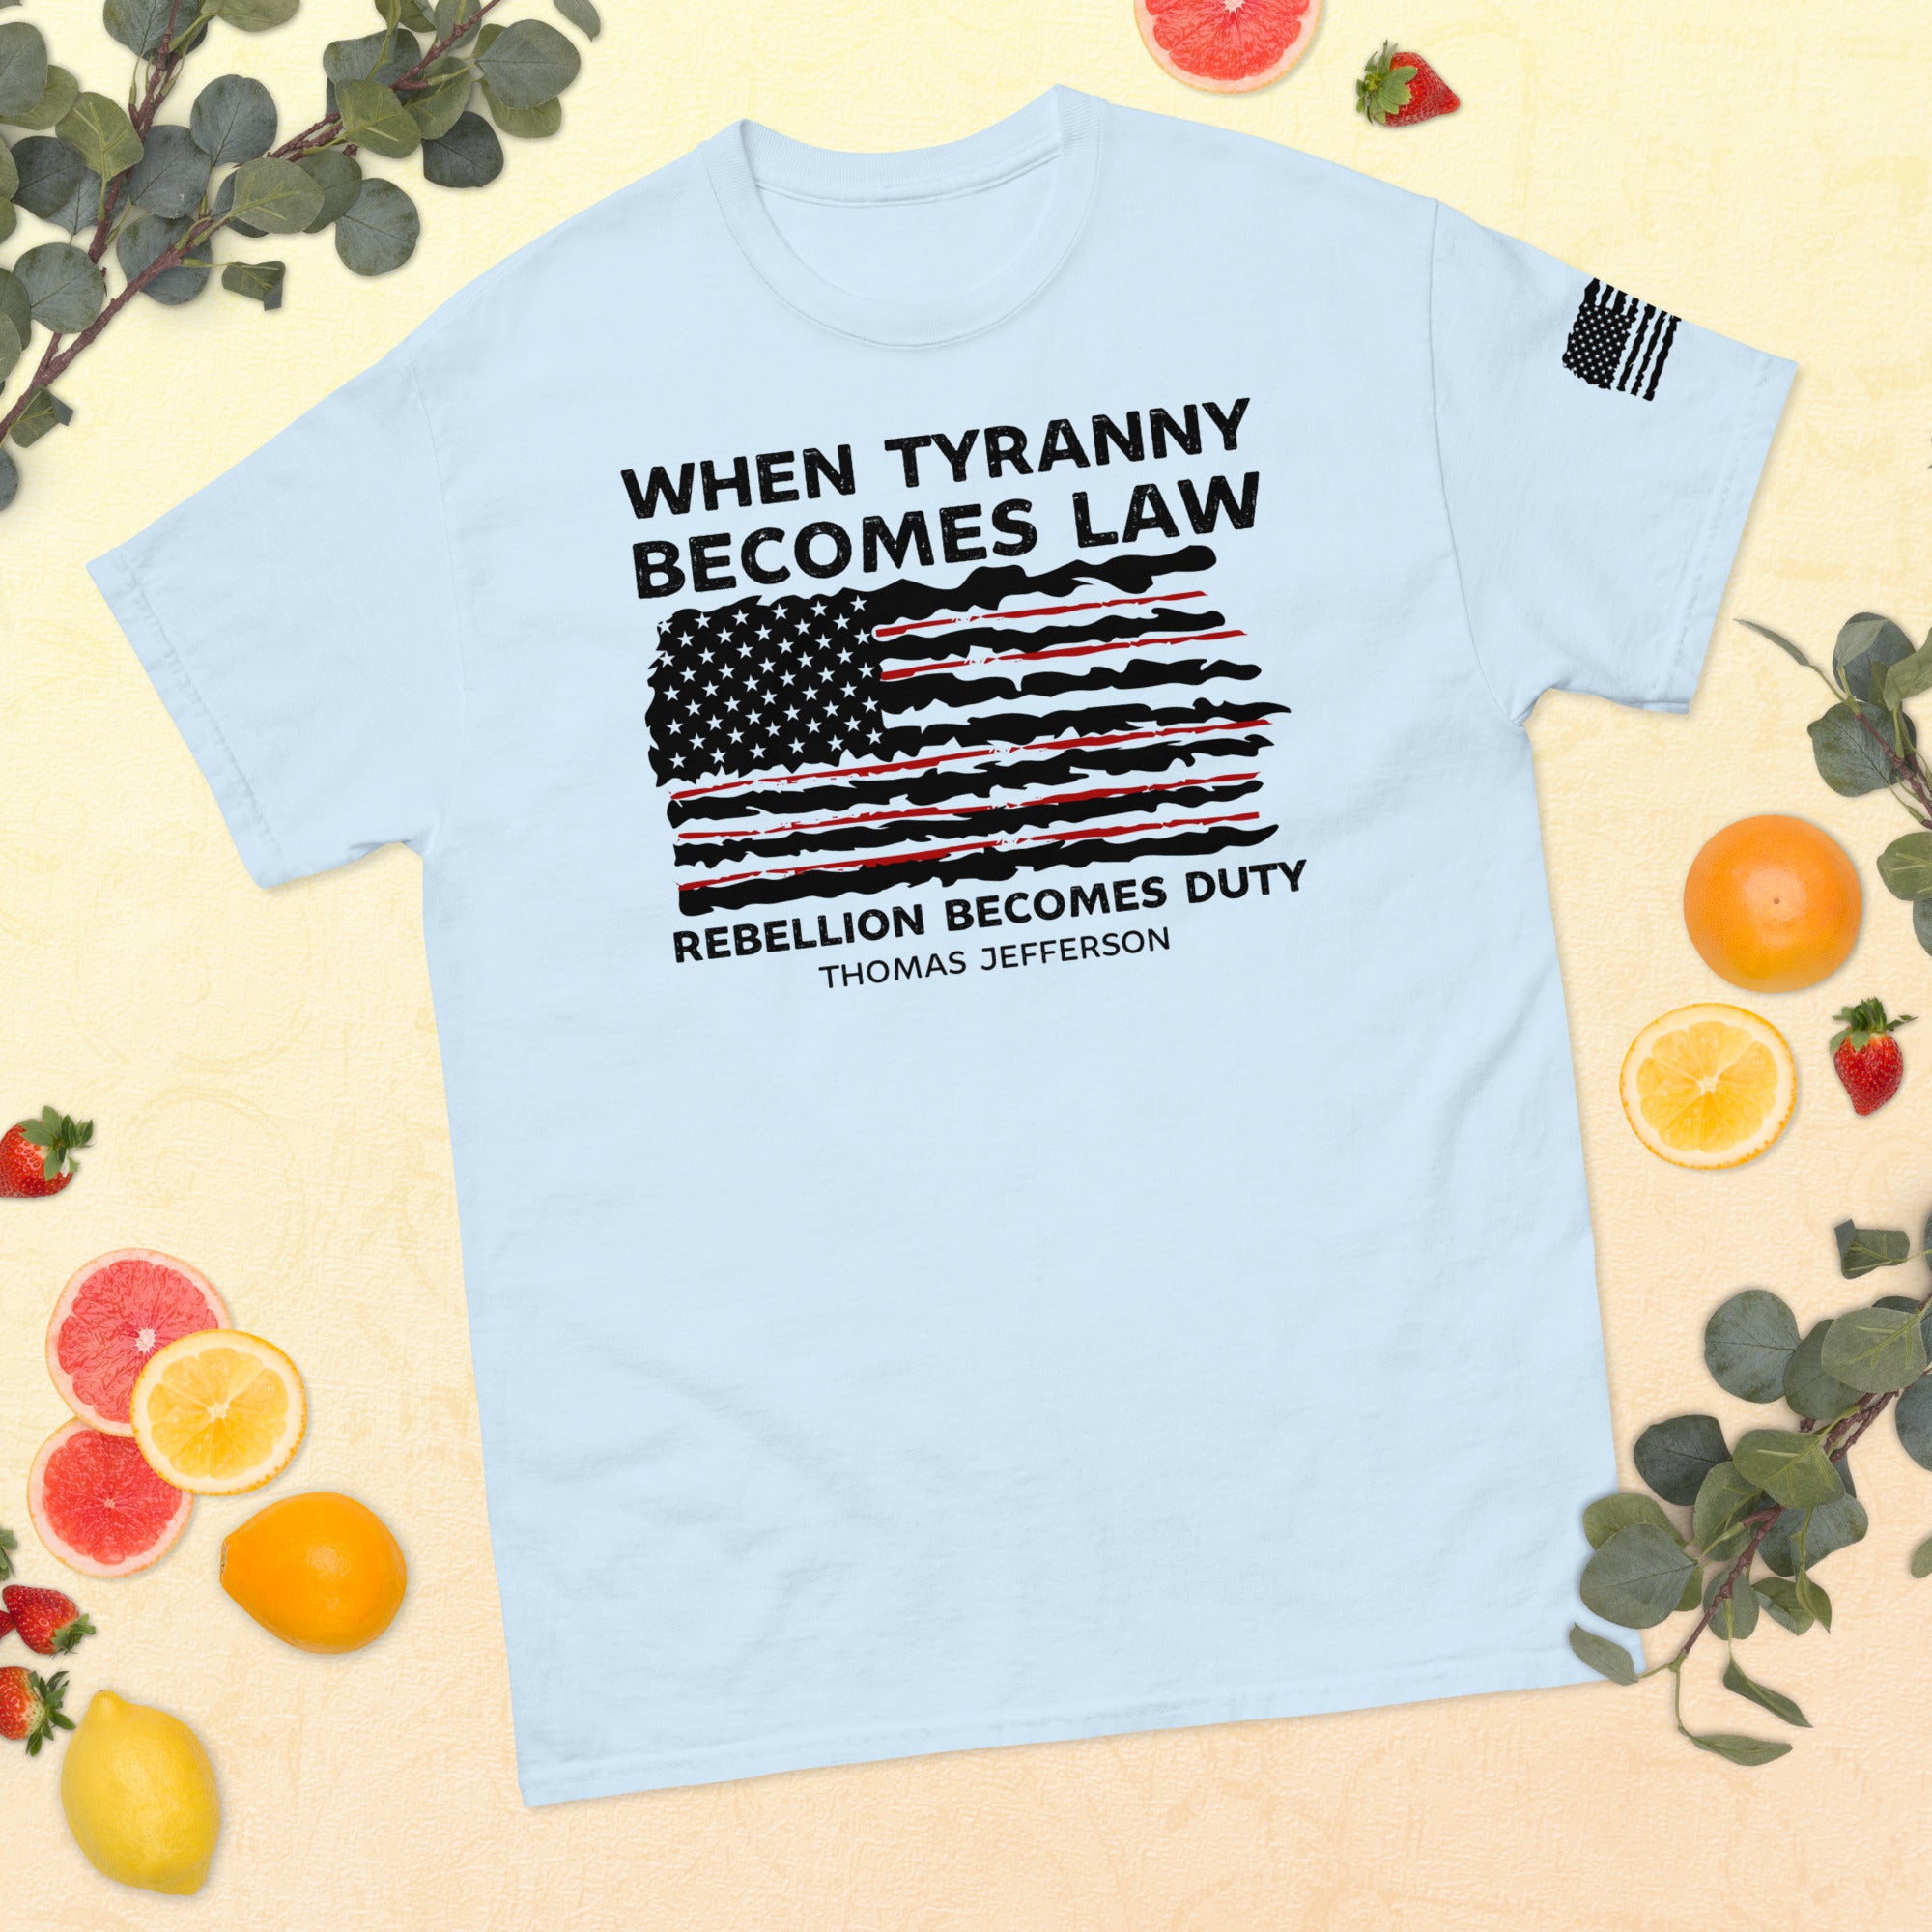 Wenn Tyrannei zum Gesetz wird, wird Rebellion zur Pflicht, 1776 Shirt, Thomas Jefferson Shirt, Politische Shirts, Tyrannei Shirt, Rebellion Shirt